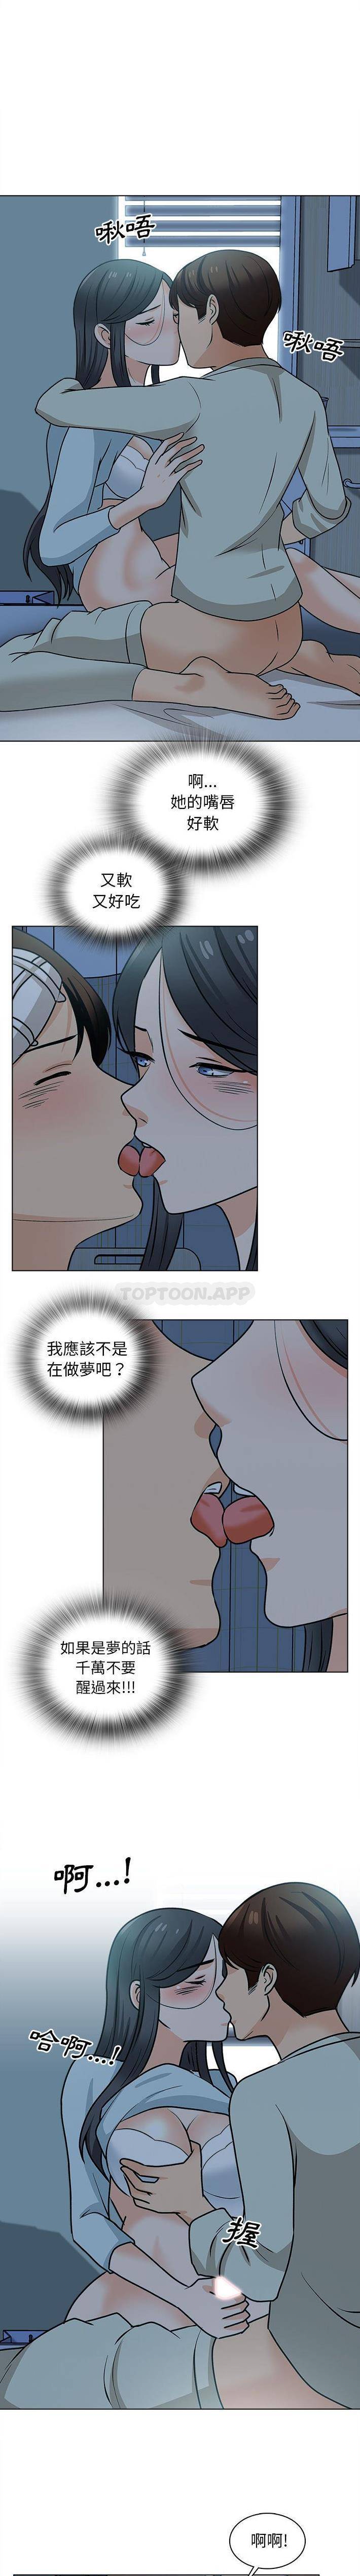 韩国污漫画 幸福公寓 第23话 13